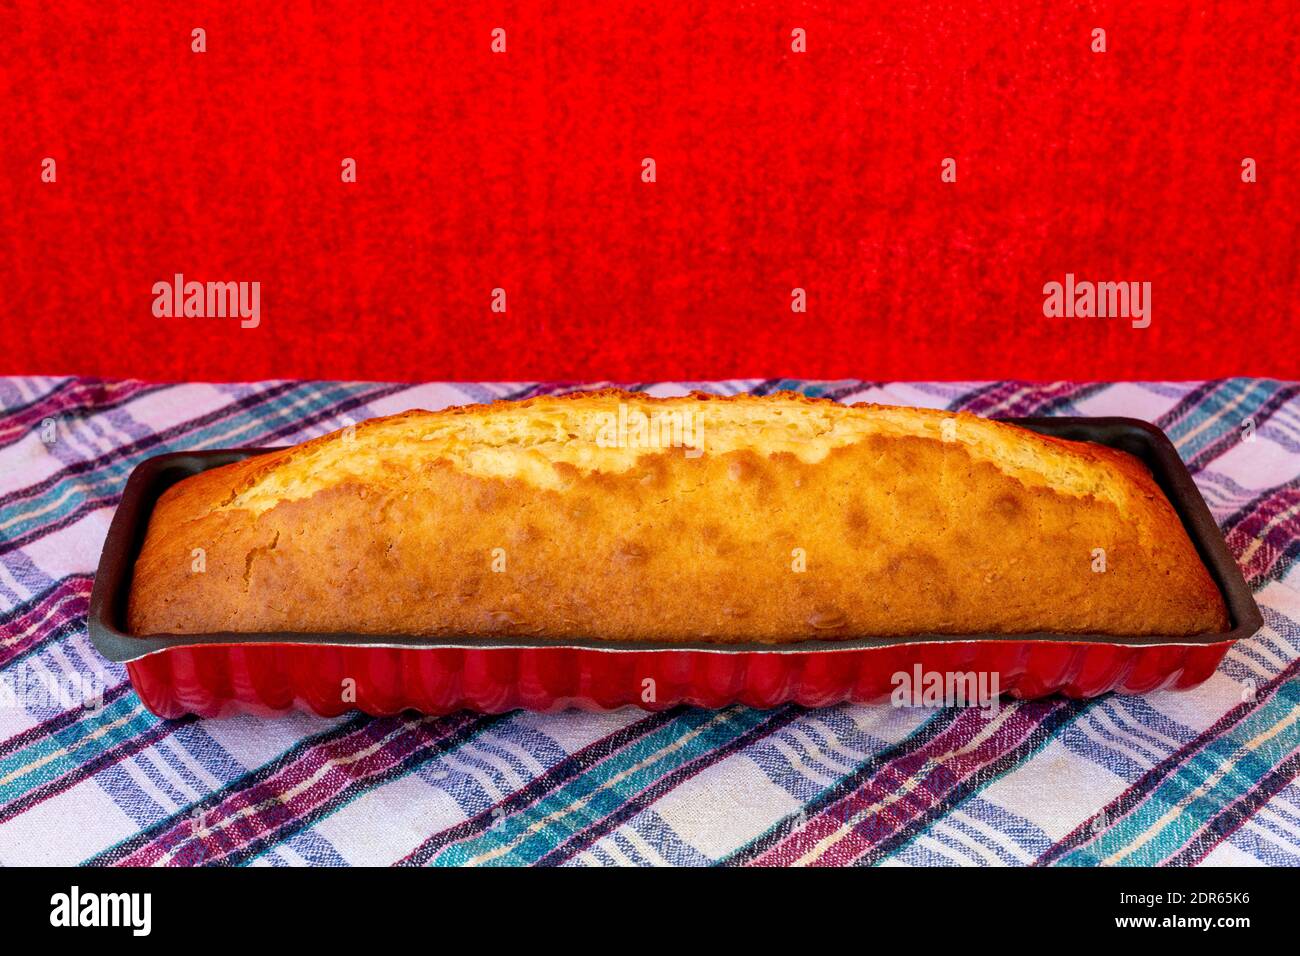 Carota appena sfornata, torta al limone in piedi in una muffa per torte Foto Stock